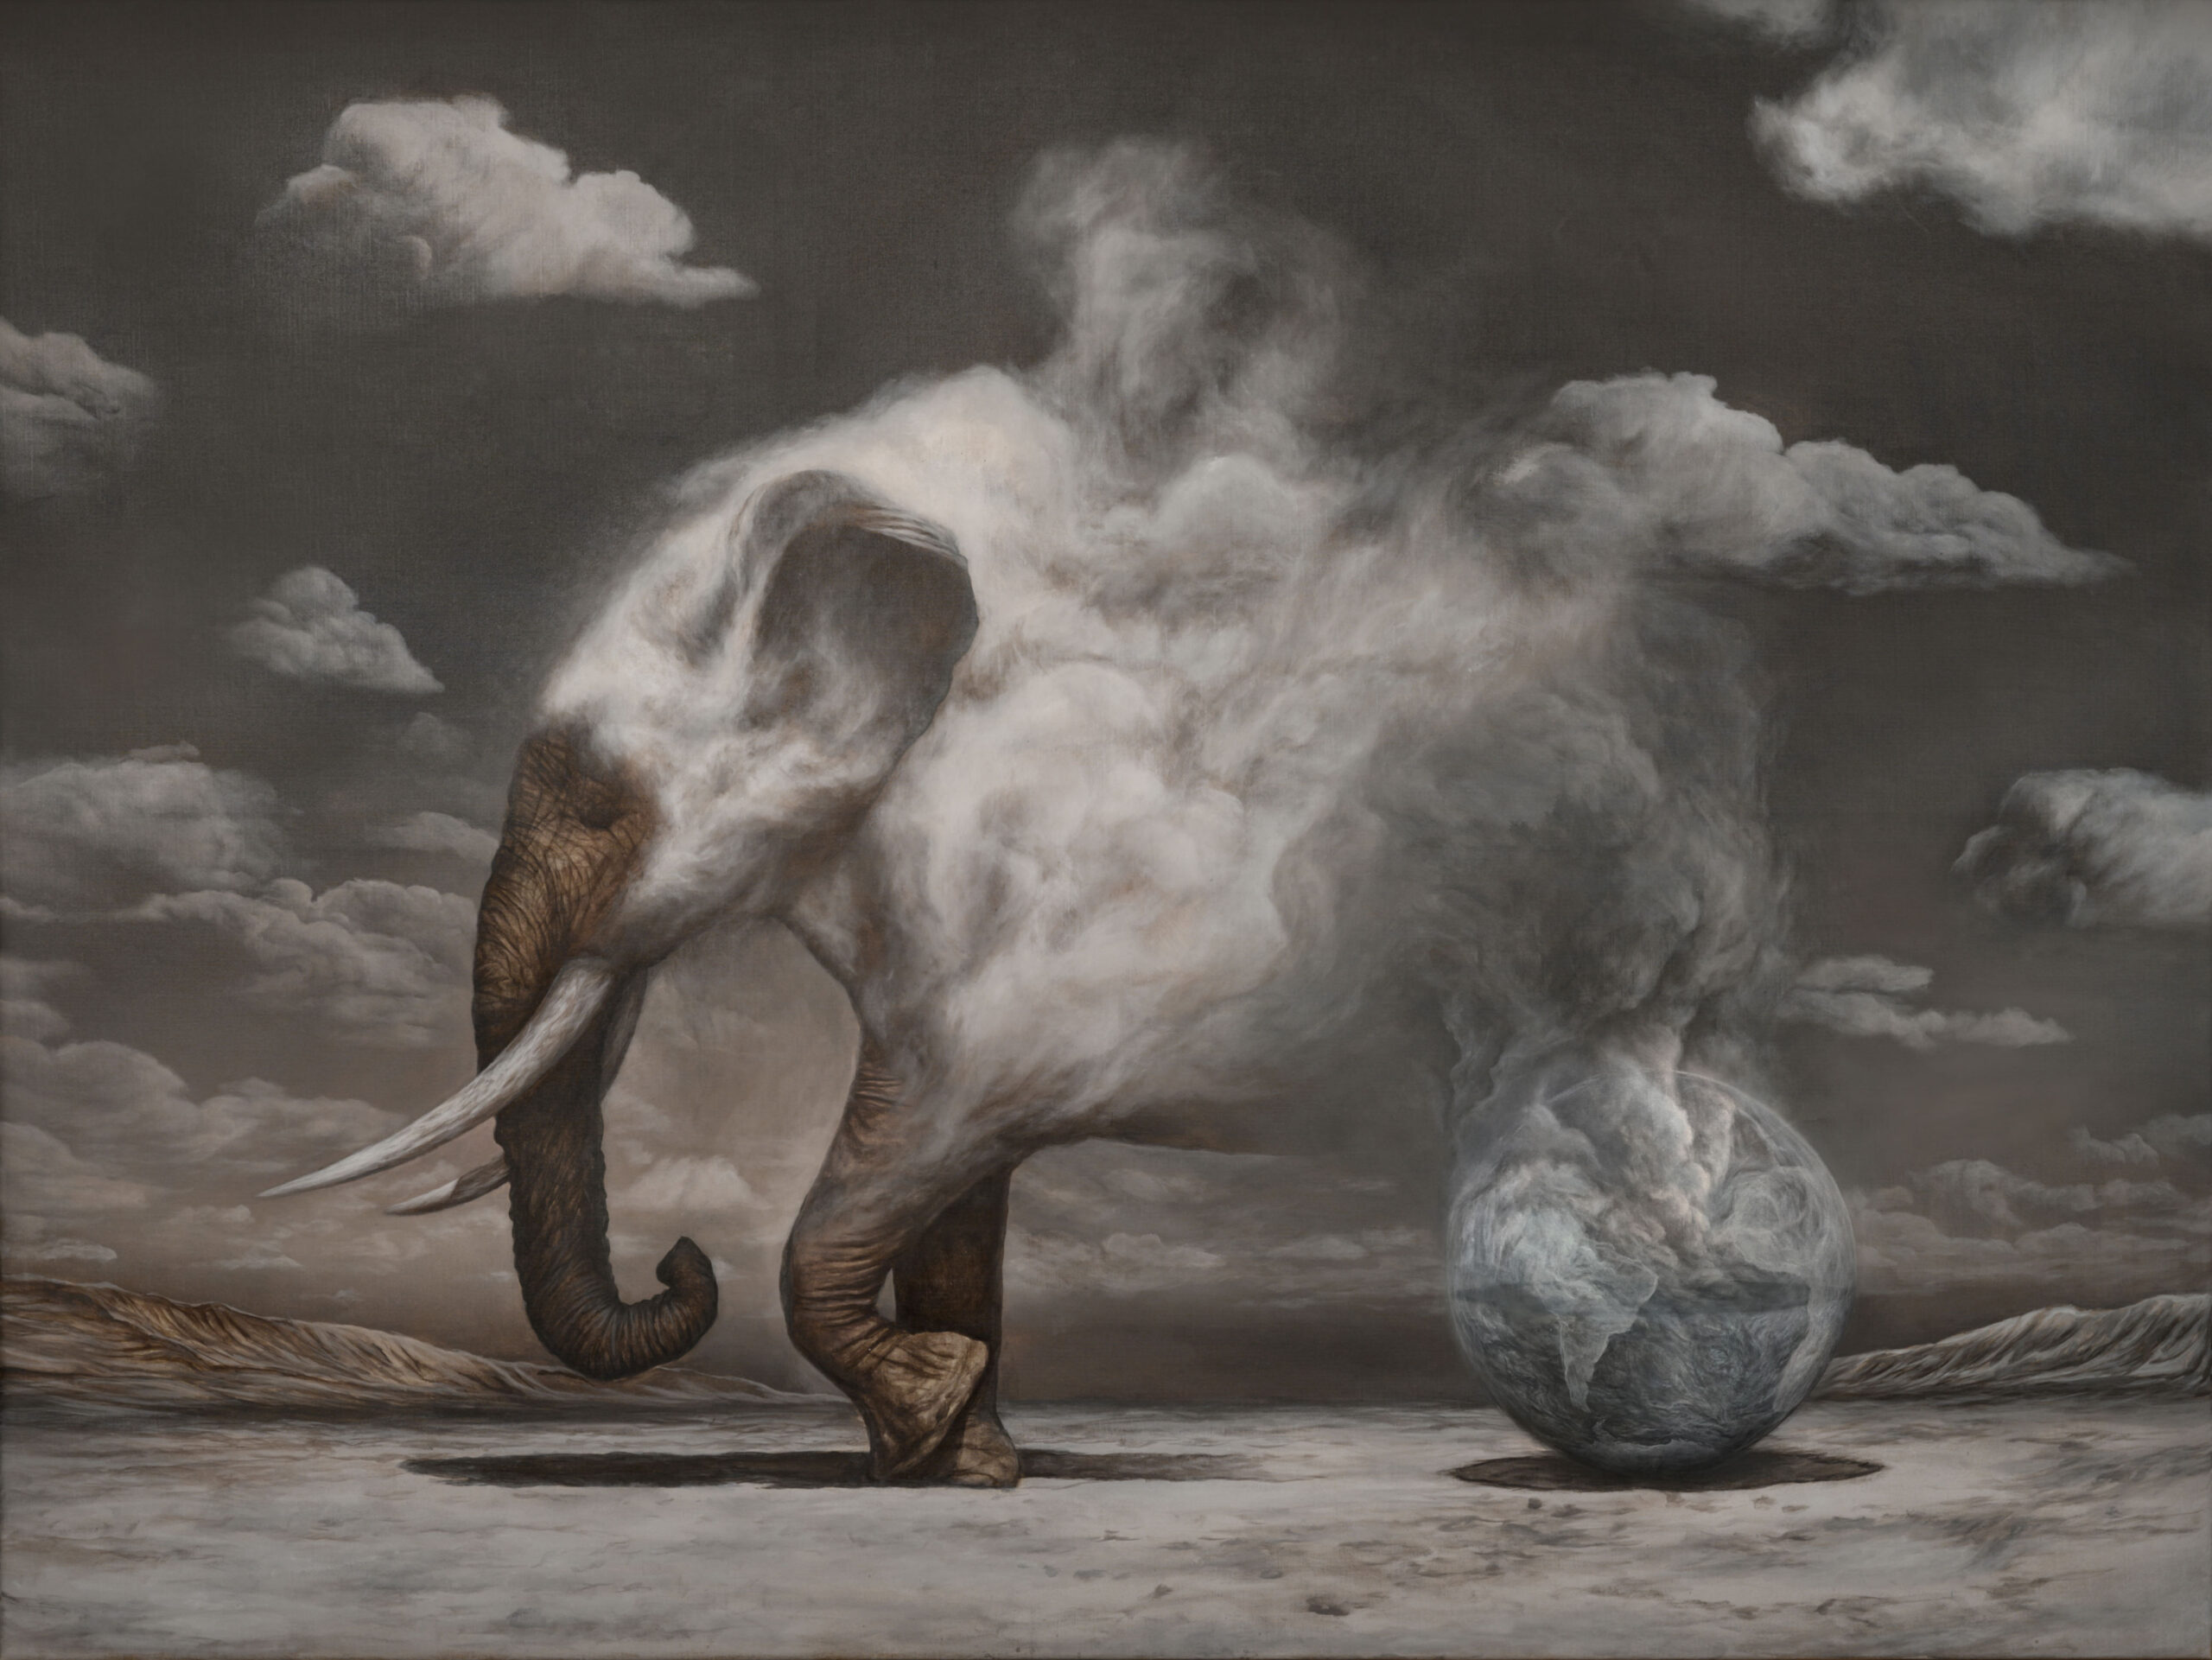 Gemälde mit einer surrealen, kargen Landschaft, auf die gerade ein Elefant seine Vorderfüße setzt. Hinterteil verlässt die rauchende Erdkugel und löst sich in Rauch auf.